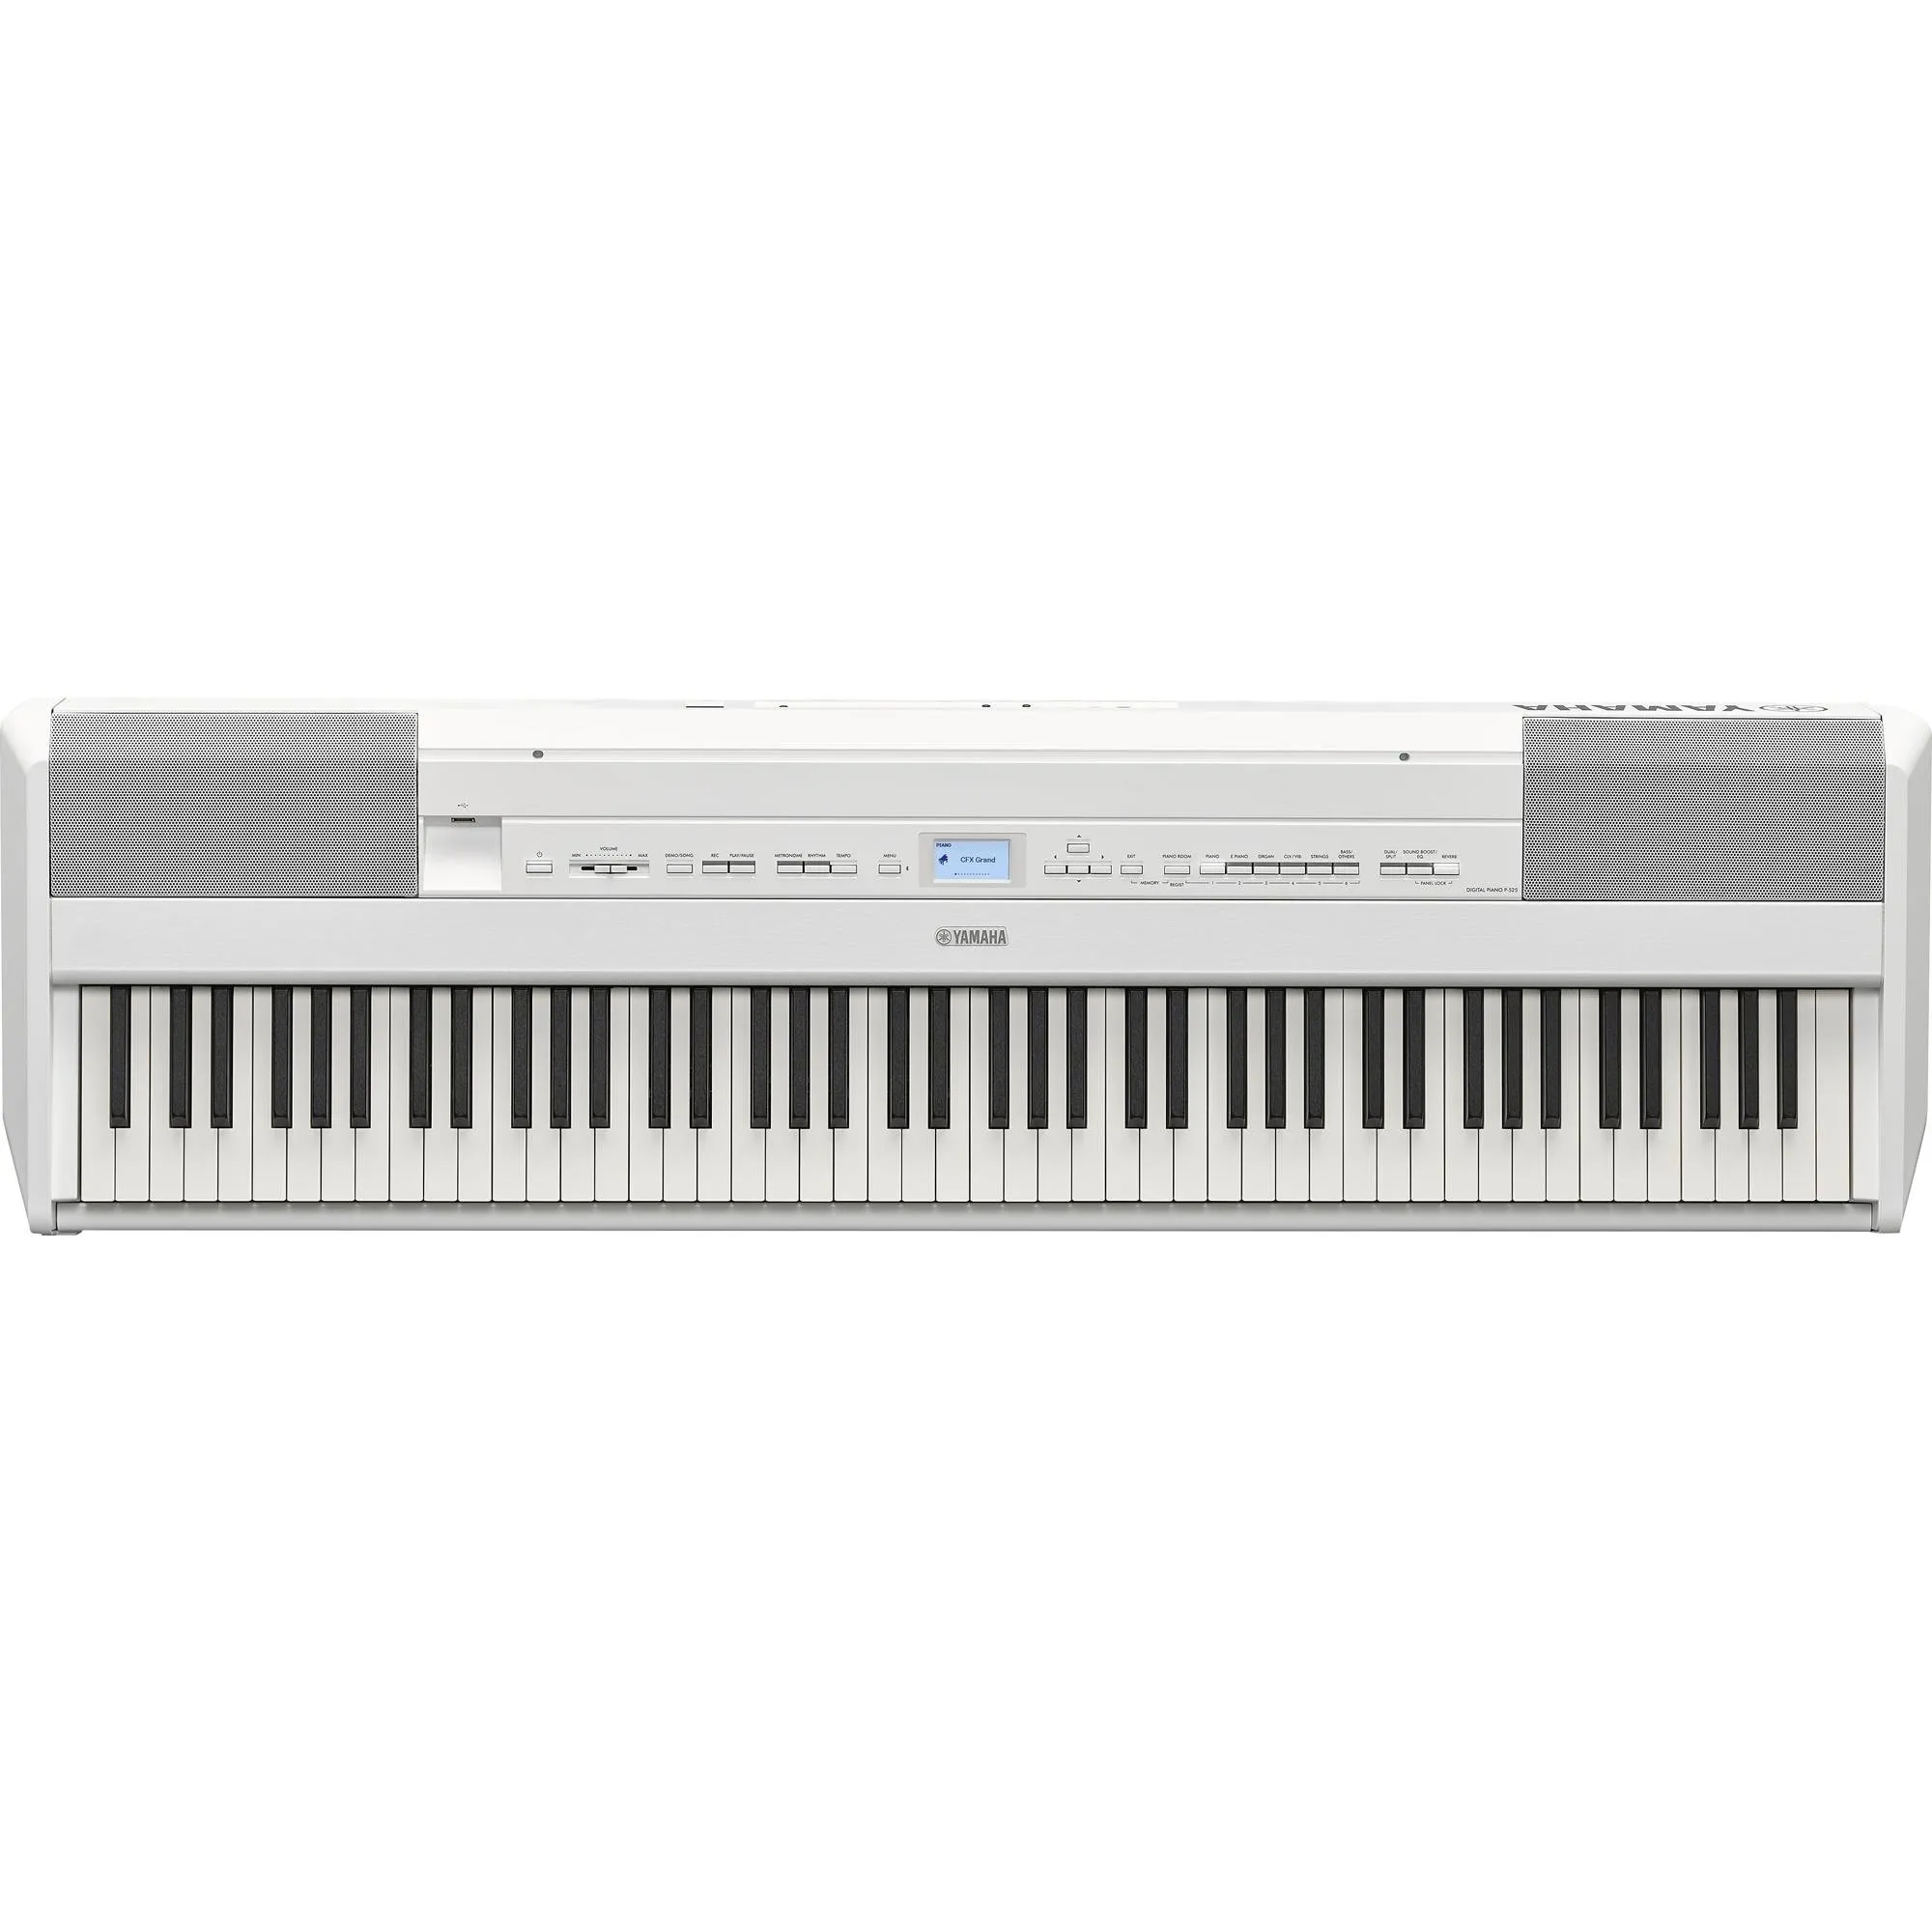 Piano Yamaha P-525 Digital Branco por 0,00 à vista no boleto/pix ou parcele em até 1x sem juros. Compre na loja Mundomax!